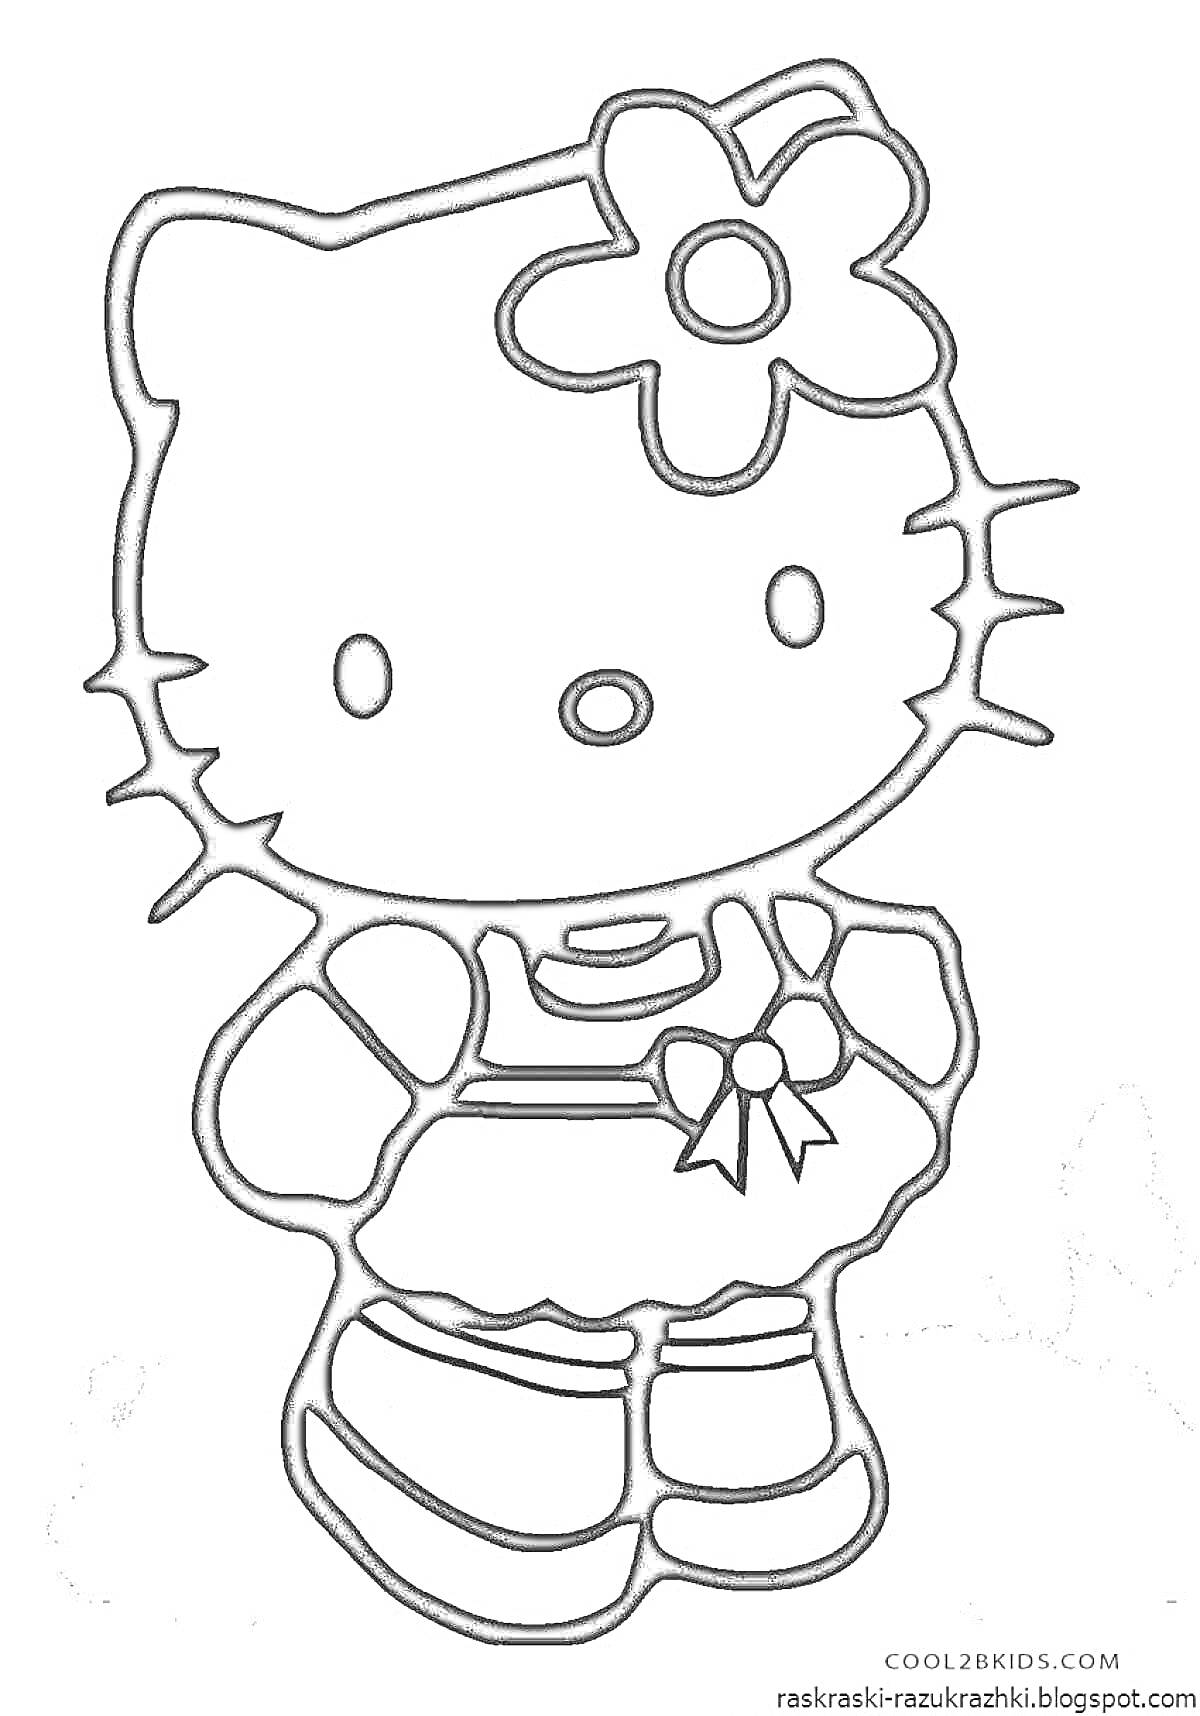 Раскраска Хеллоу Кити с цветком на голове и бантом на одежде